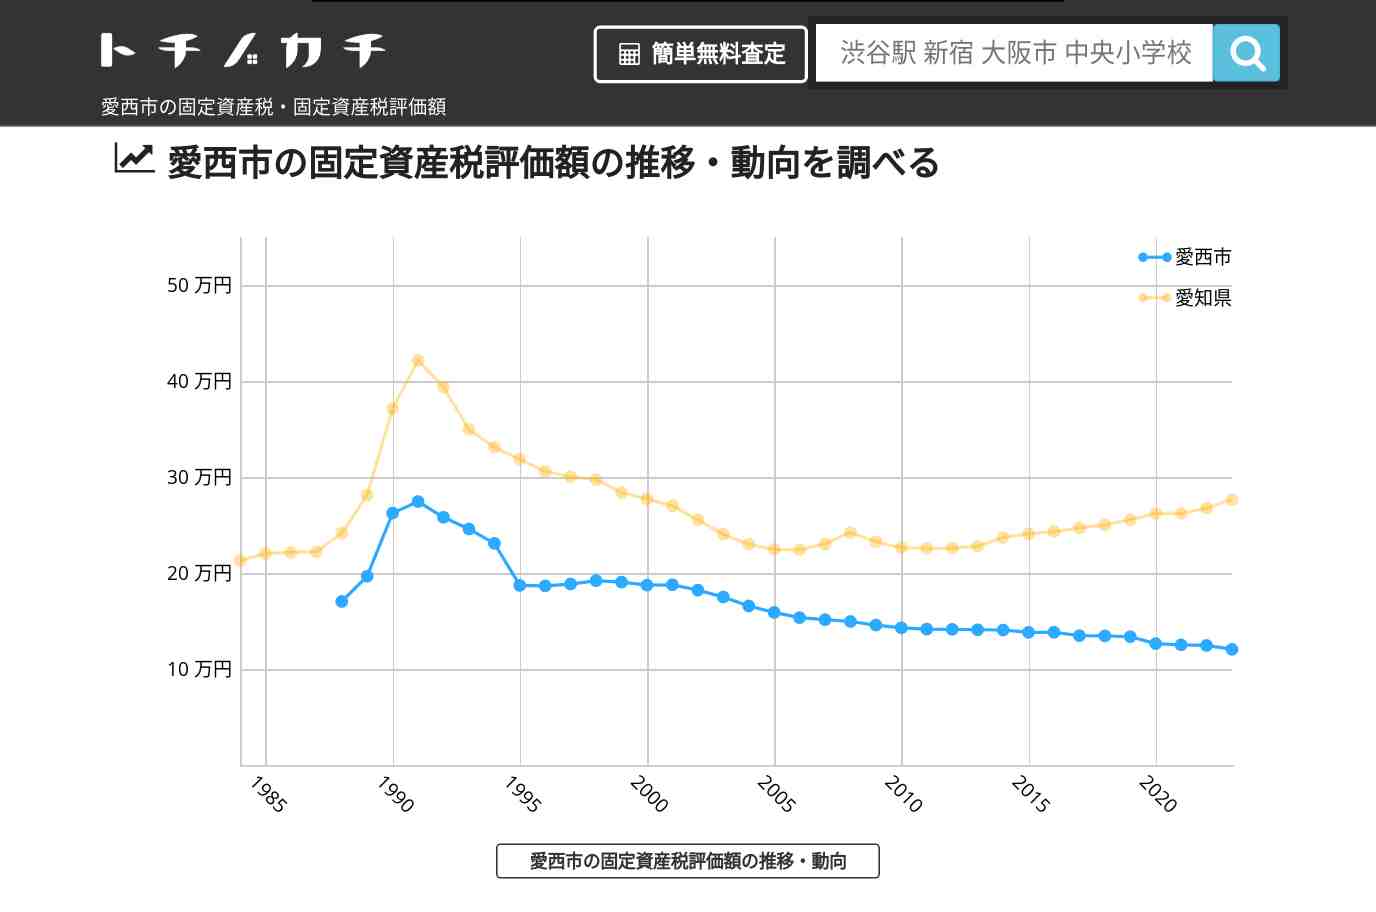 八開中学校(愛知県 愛西市)周辺の固定資産税・固定資産税評価額 | トチノカチ